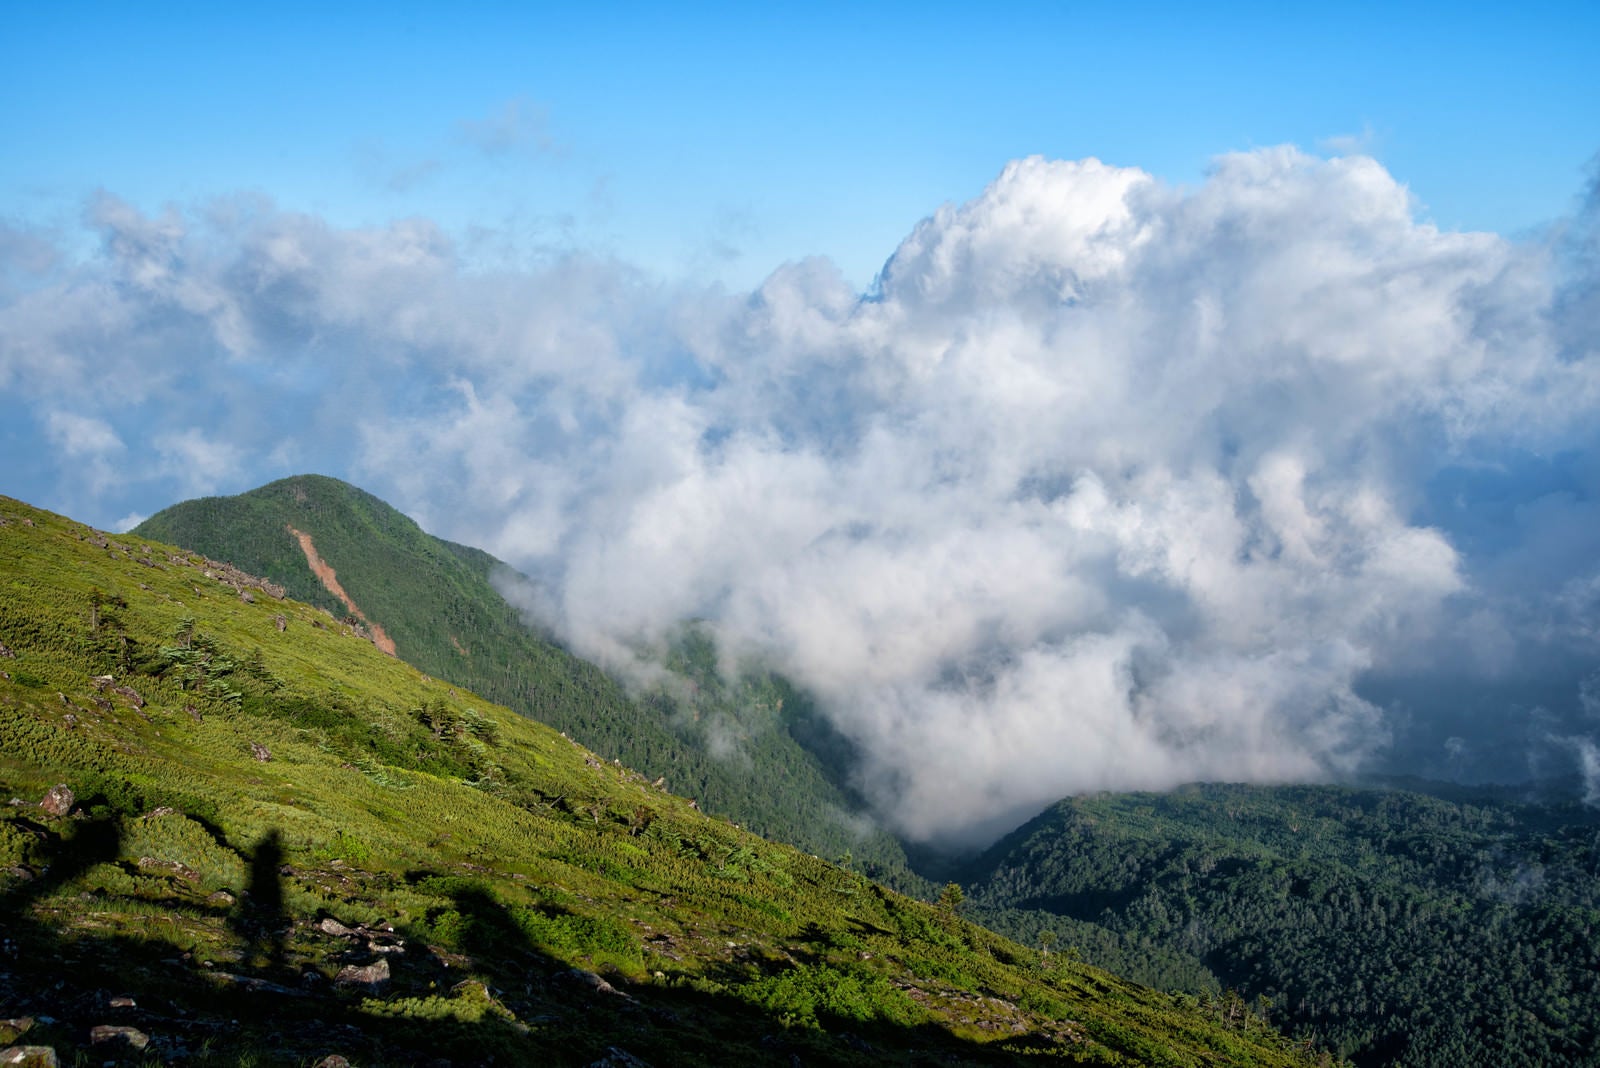 「湧き上がってくる積雲と登山者の影」の写真